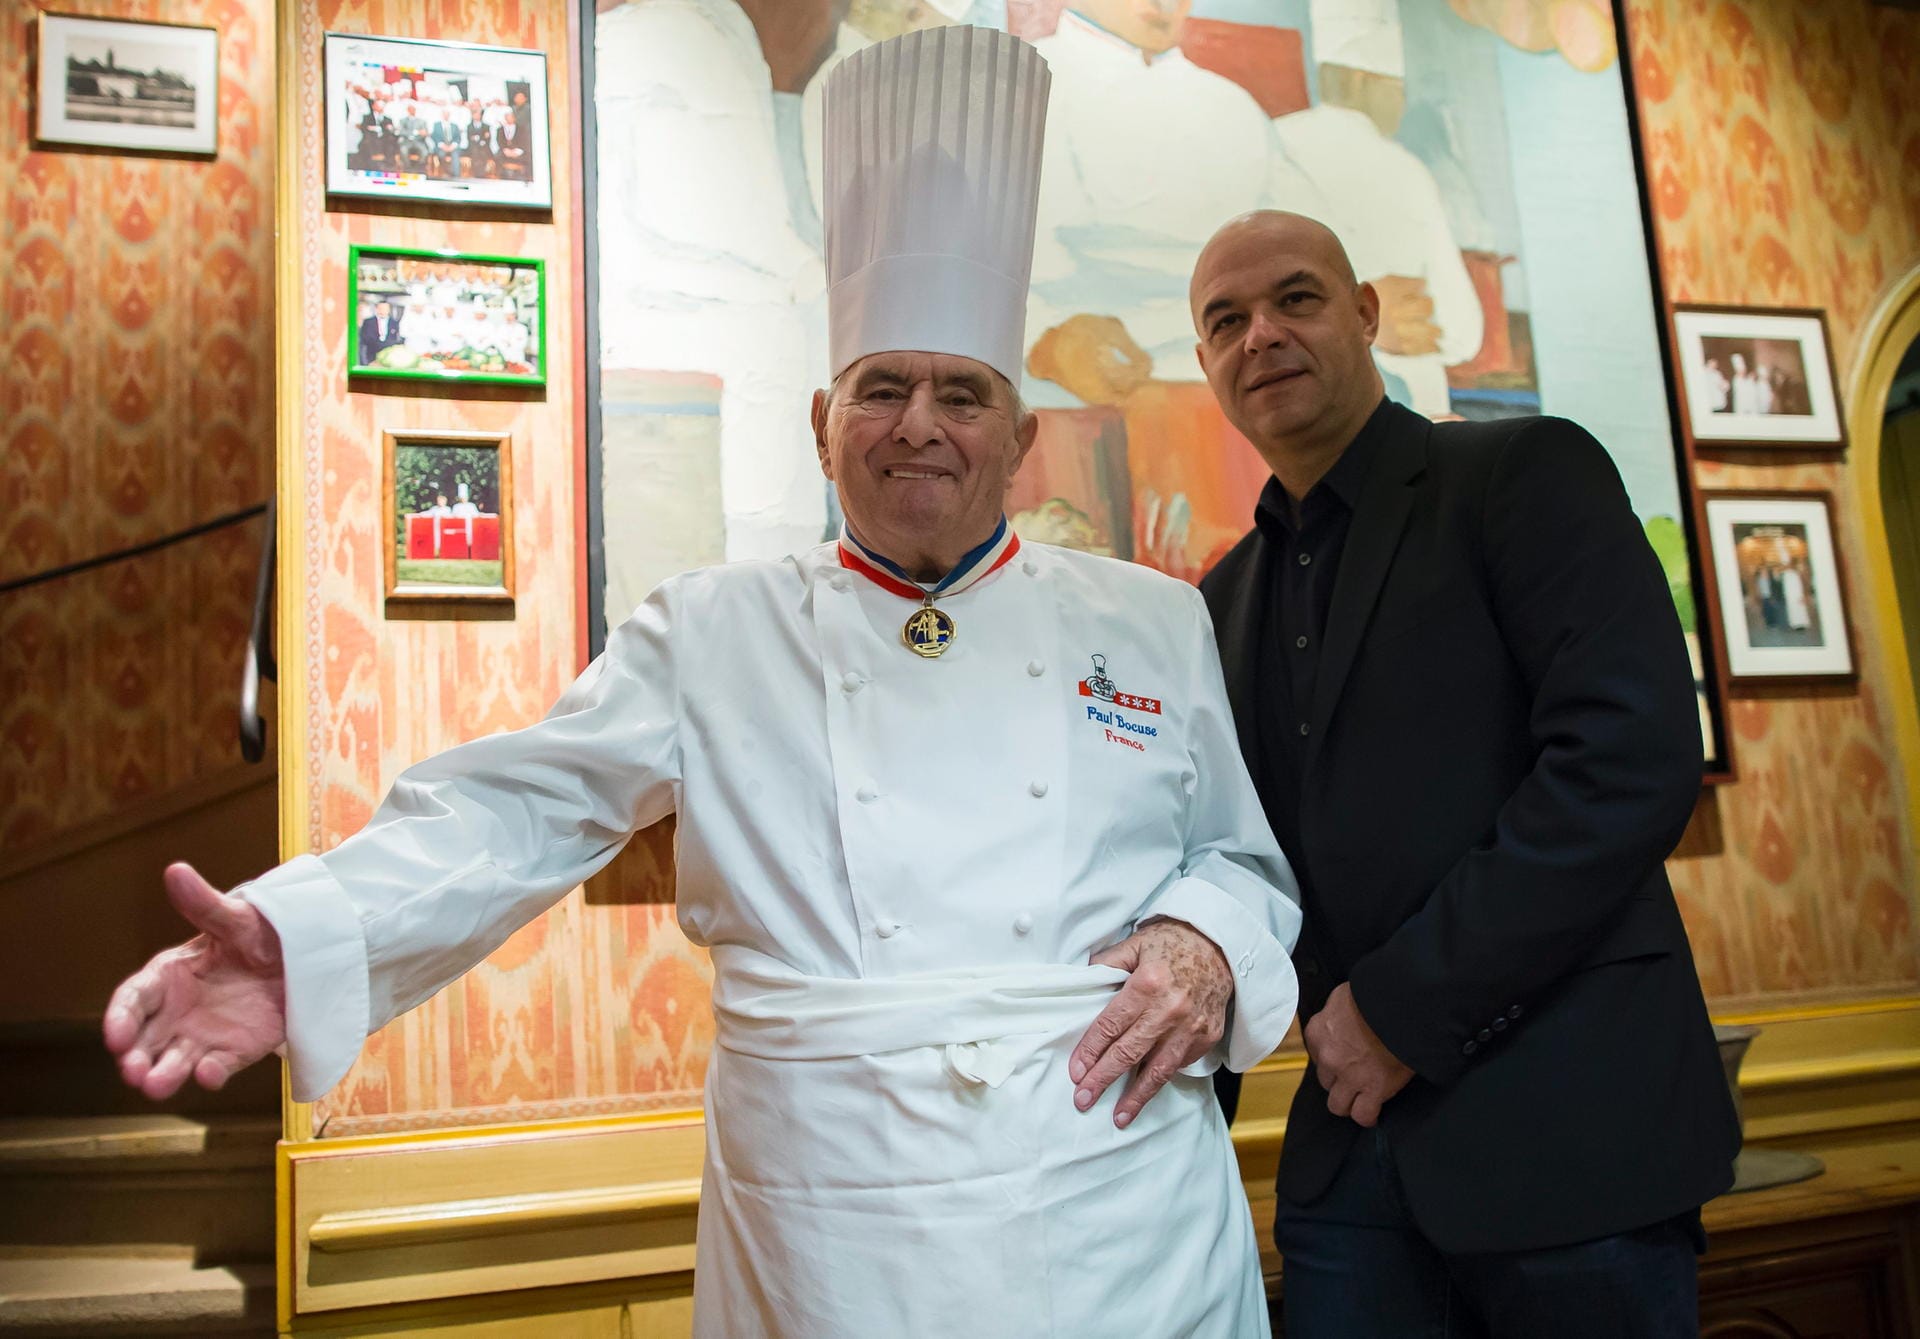 Paul Bocuse hier mit seinem Sohn Jerome Bocuse. Der Koch gilt als einer der Wegbereiter der "Nouvelle Cuisine" und erhielt zahlreiche Auszeichnungen.